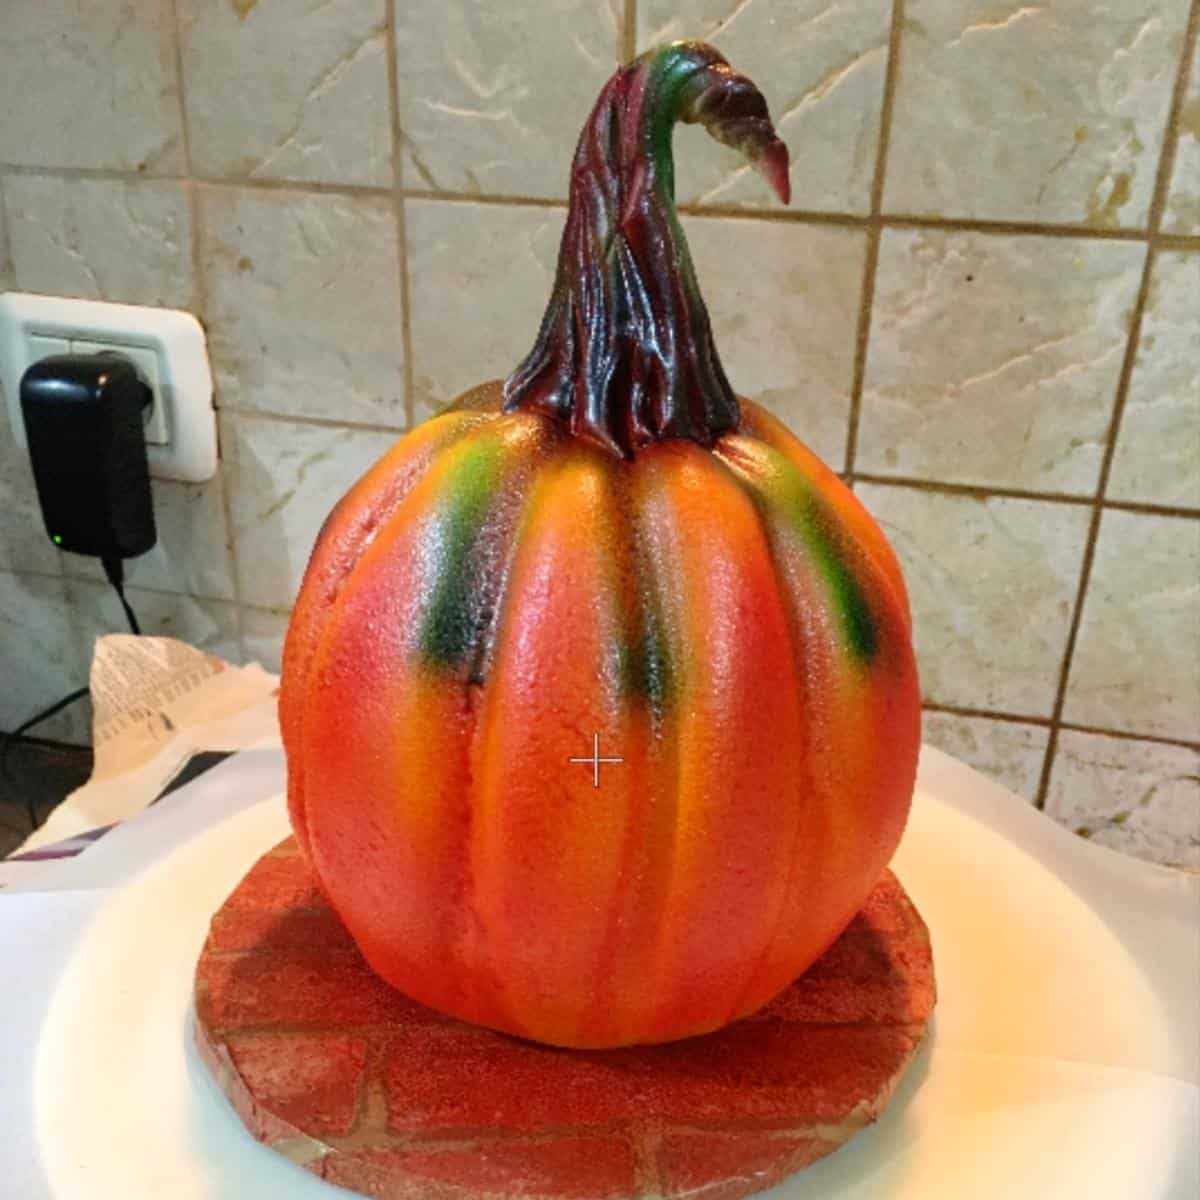 Airbrushing the pumpkin cake.